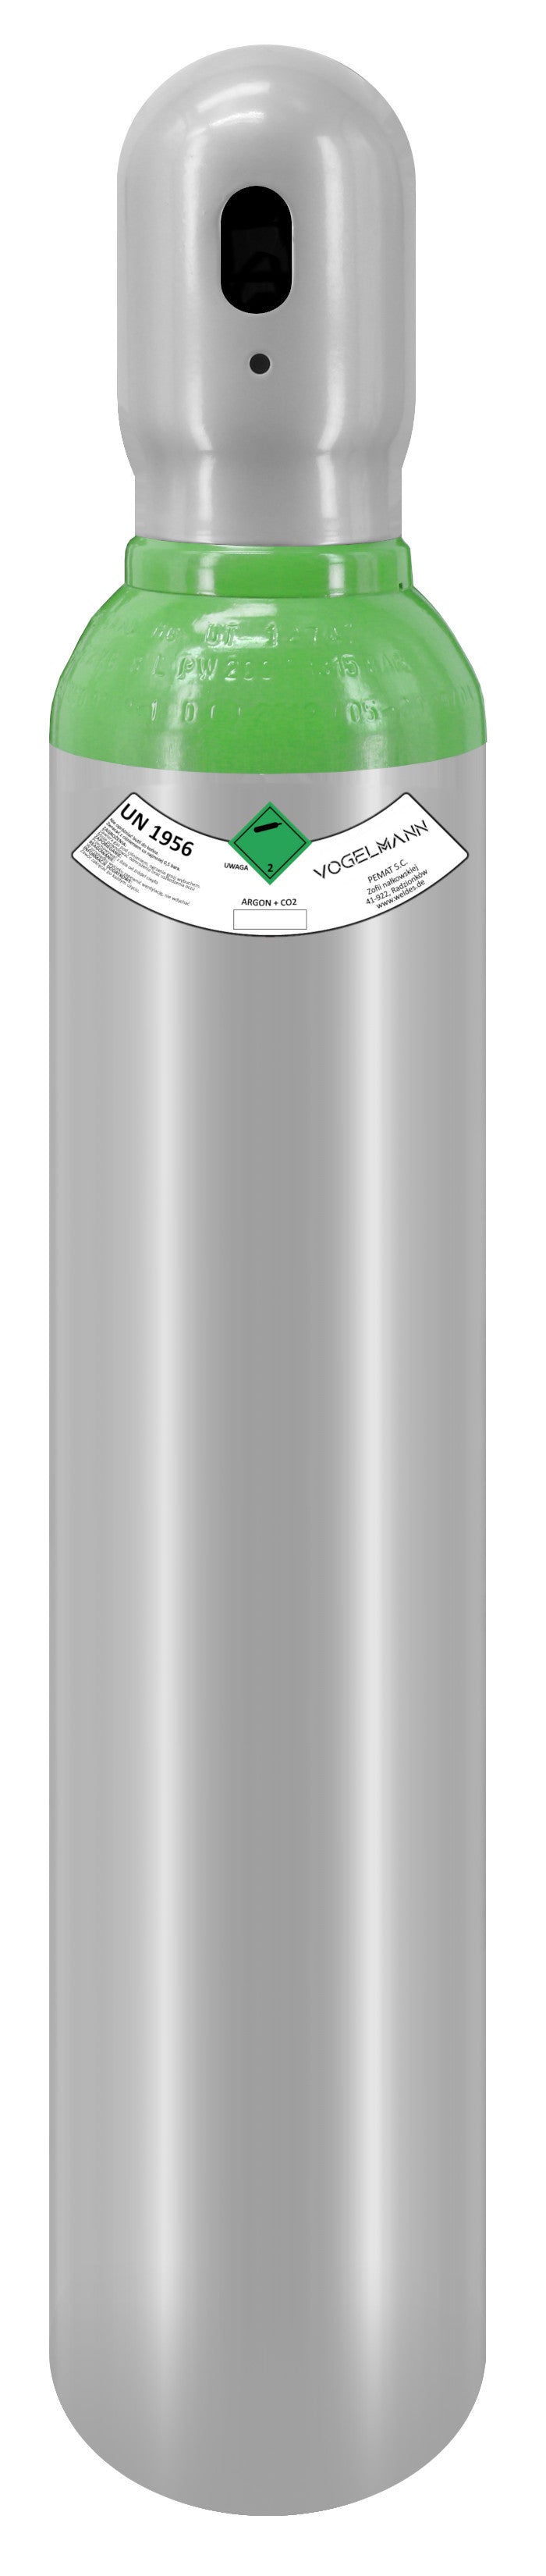 Cilindro de gas lleno de argón/CO2 8L 1,5m3 Vogelmann